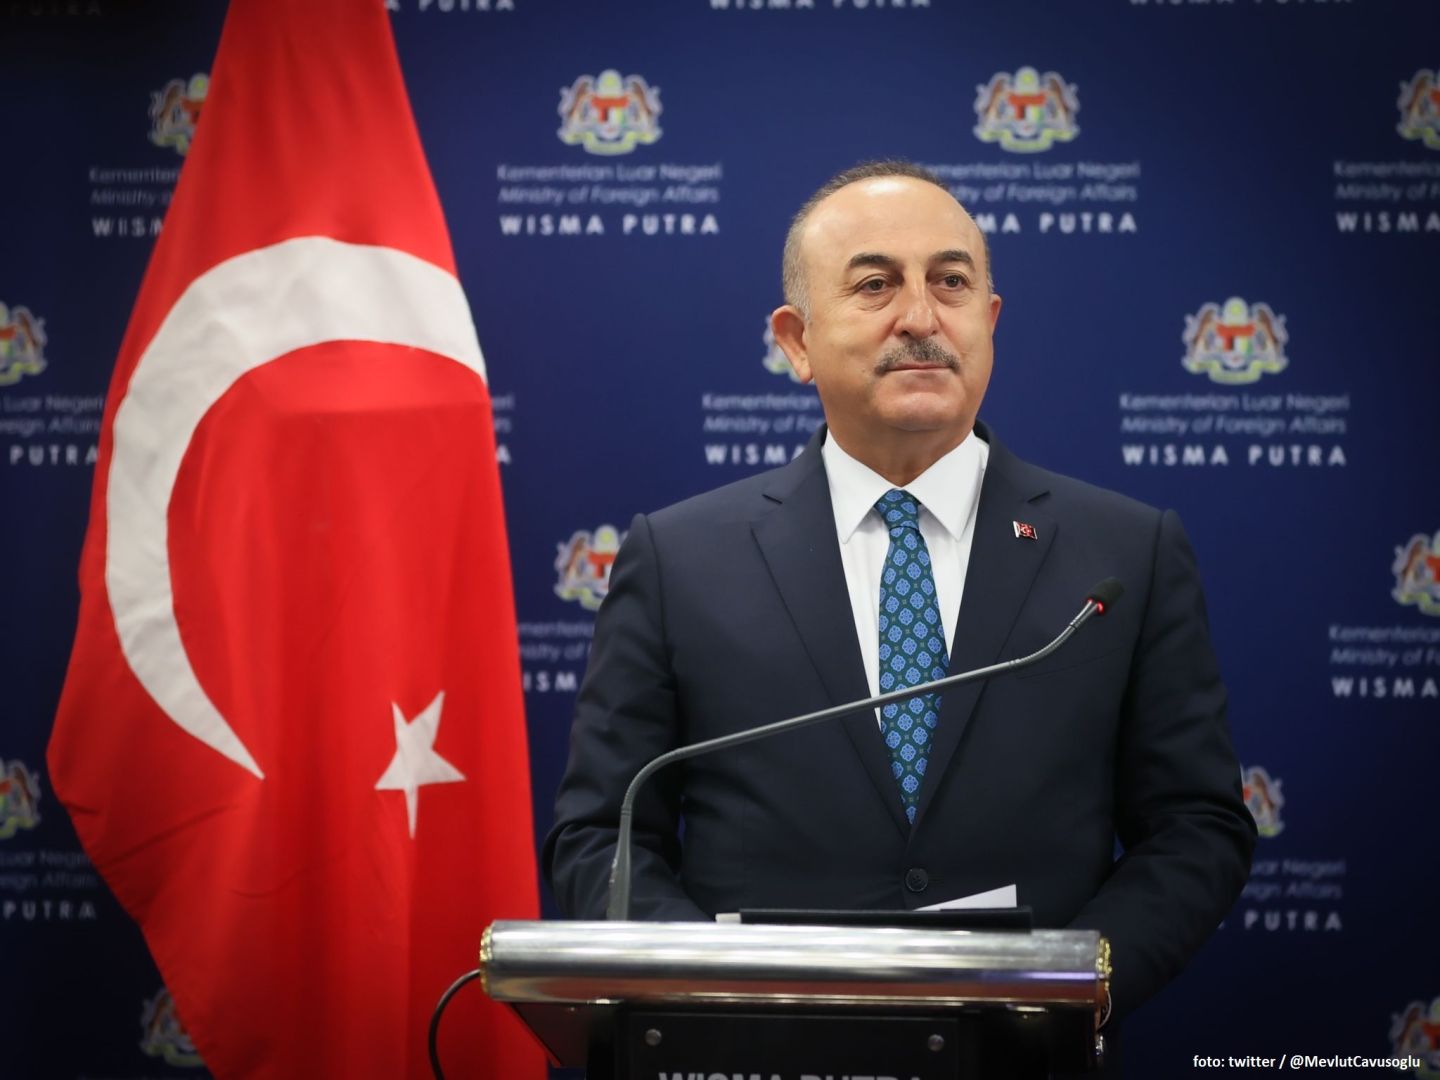 Türkiye warnte Armenien vor Provokationen